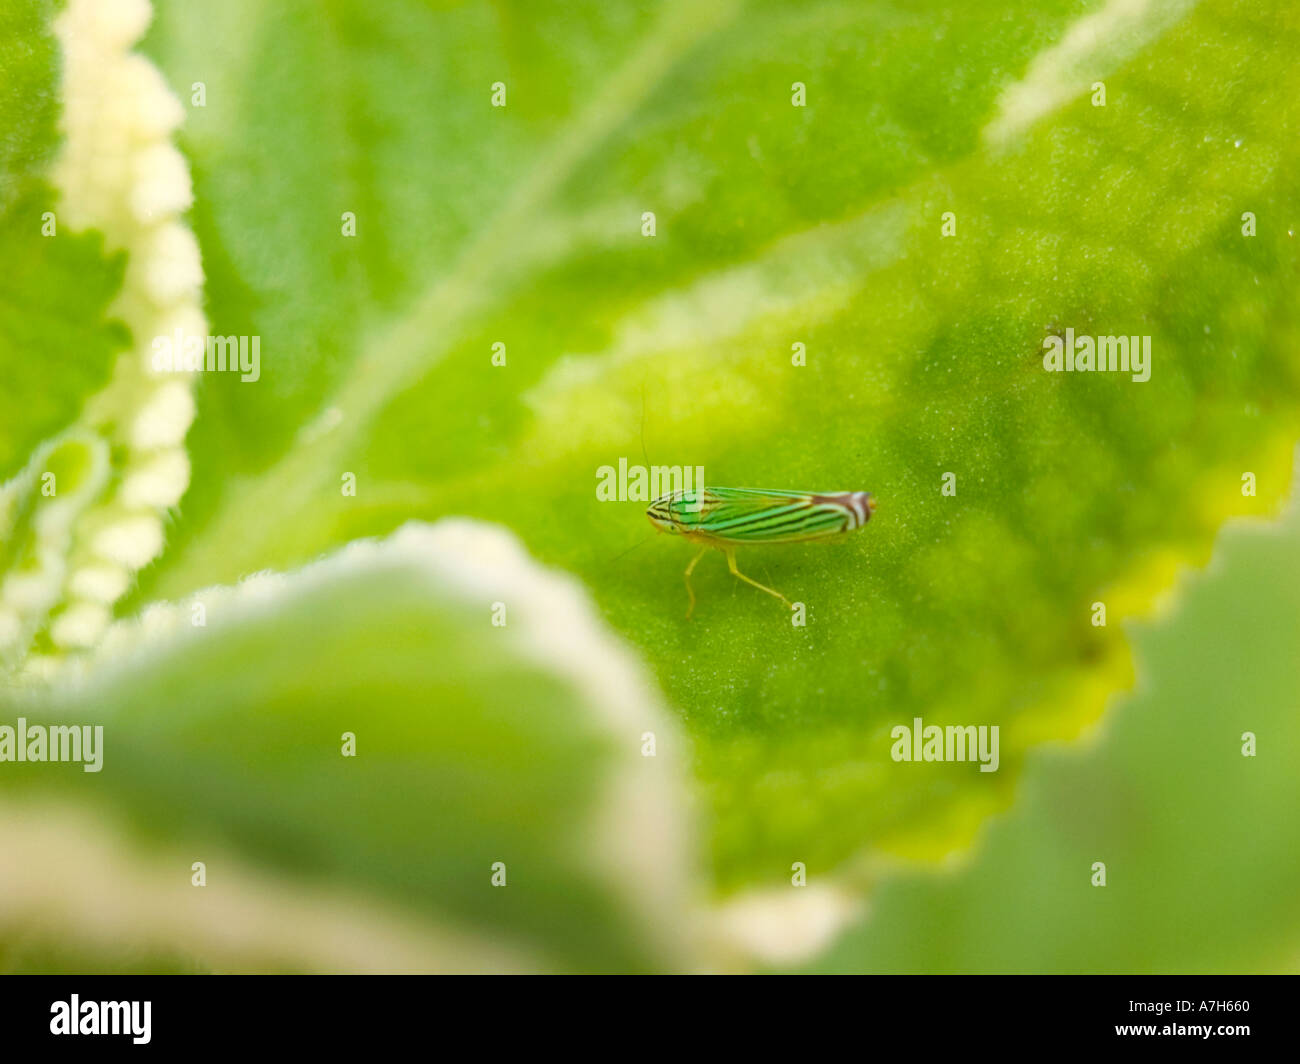 Small bug on a Cuban Oregano leaf Stock Photo